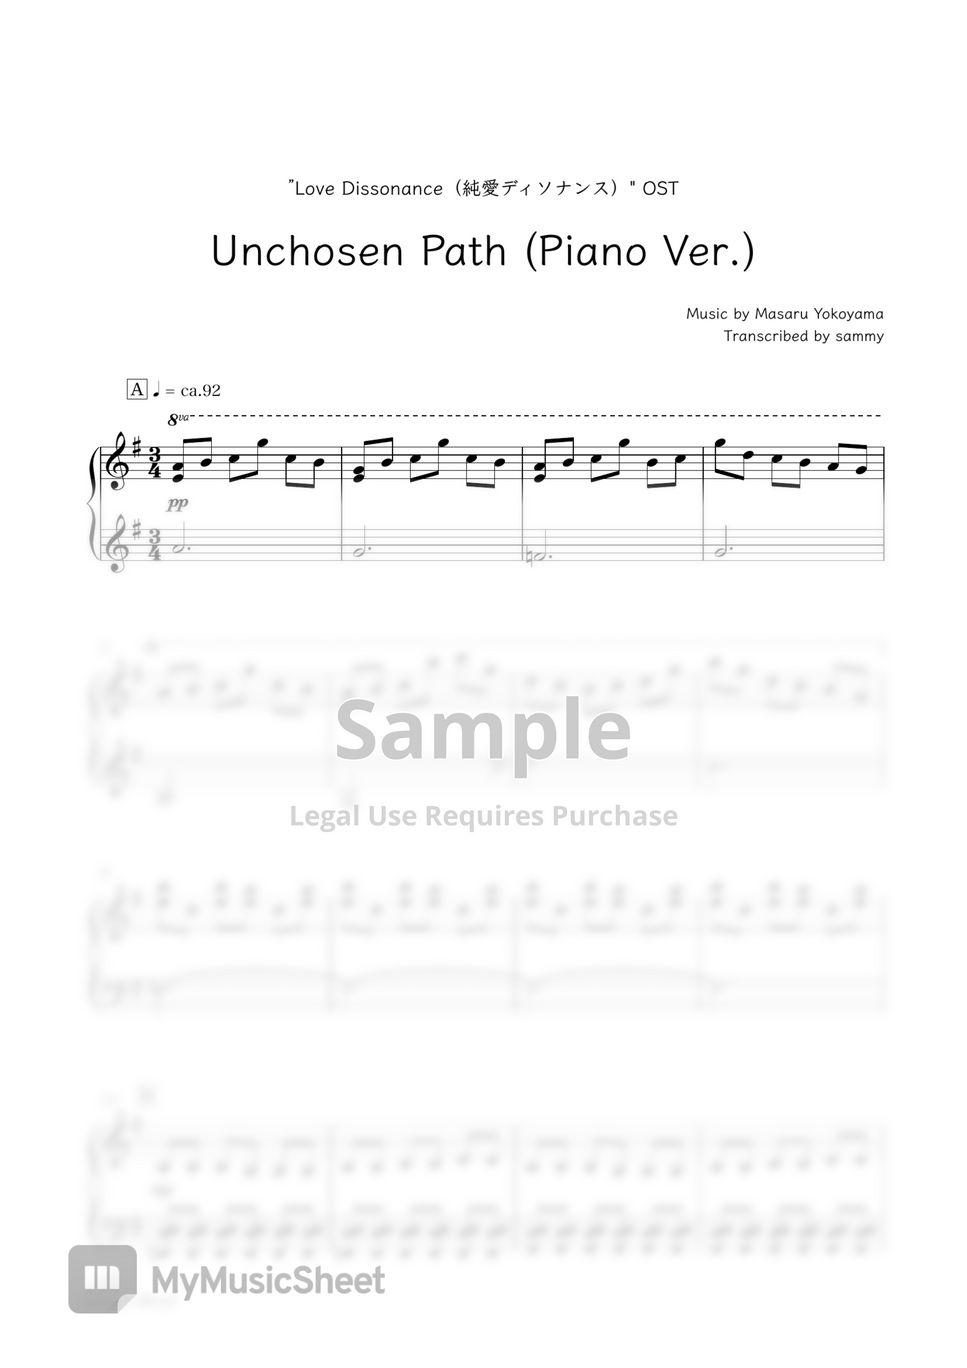 "Love Dissonance (純愛ディソナンス)"OST - Unchosen Path (Piano Ver.) by sammy